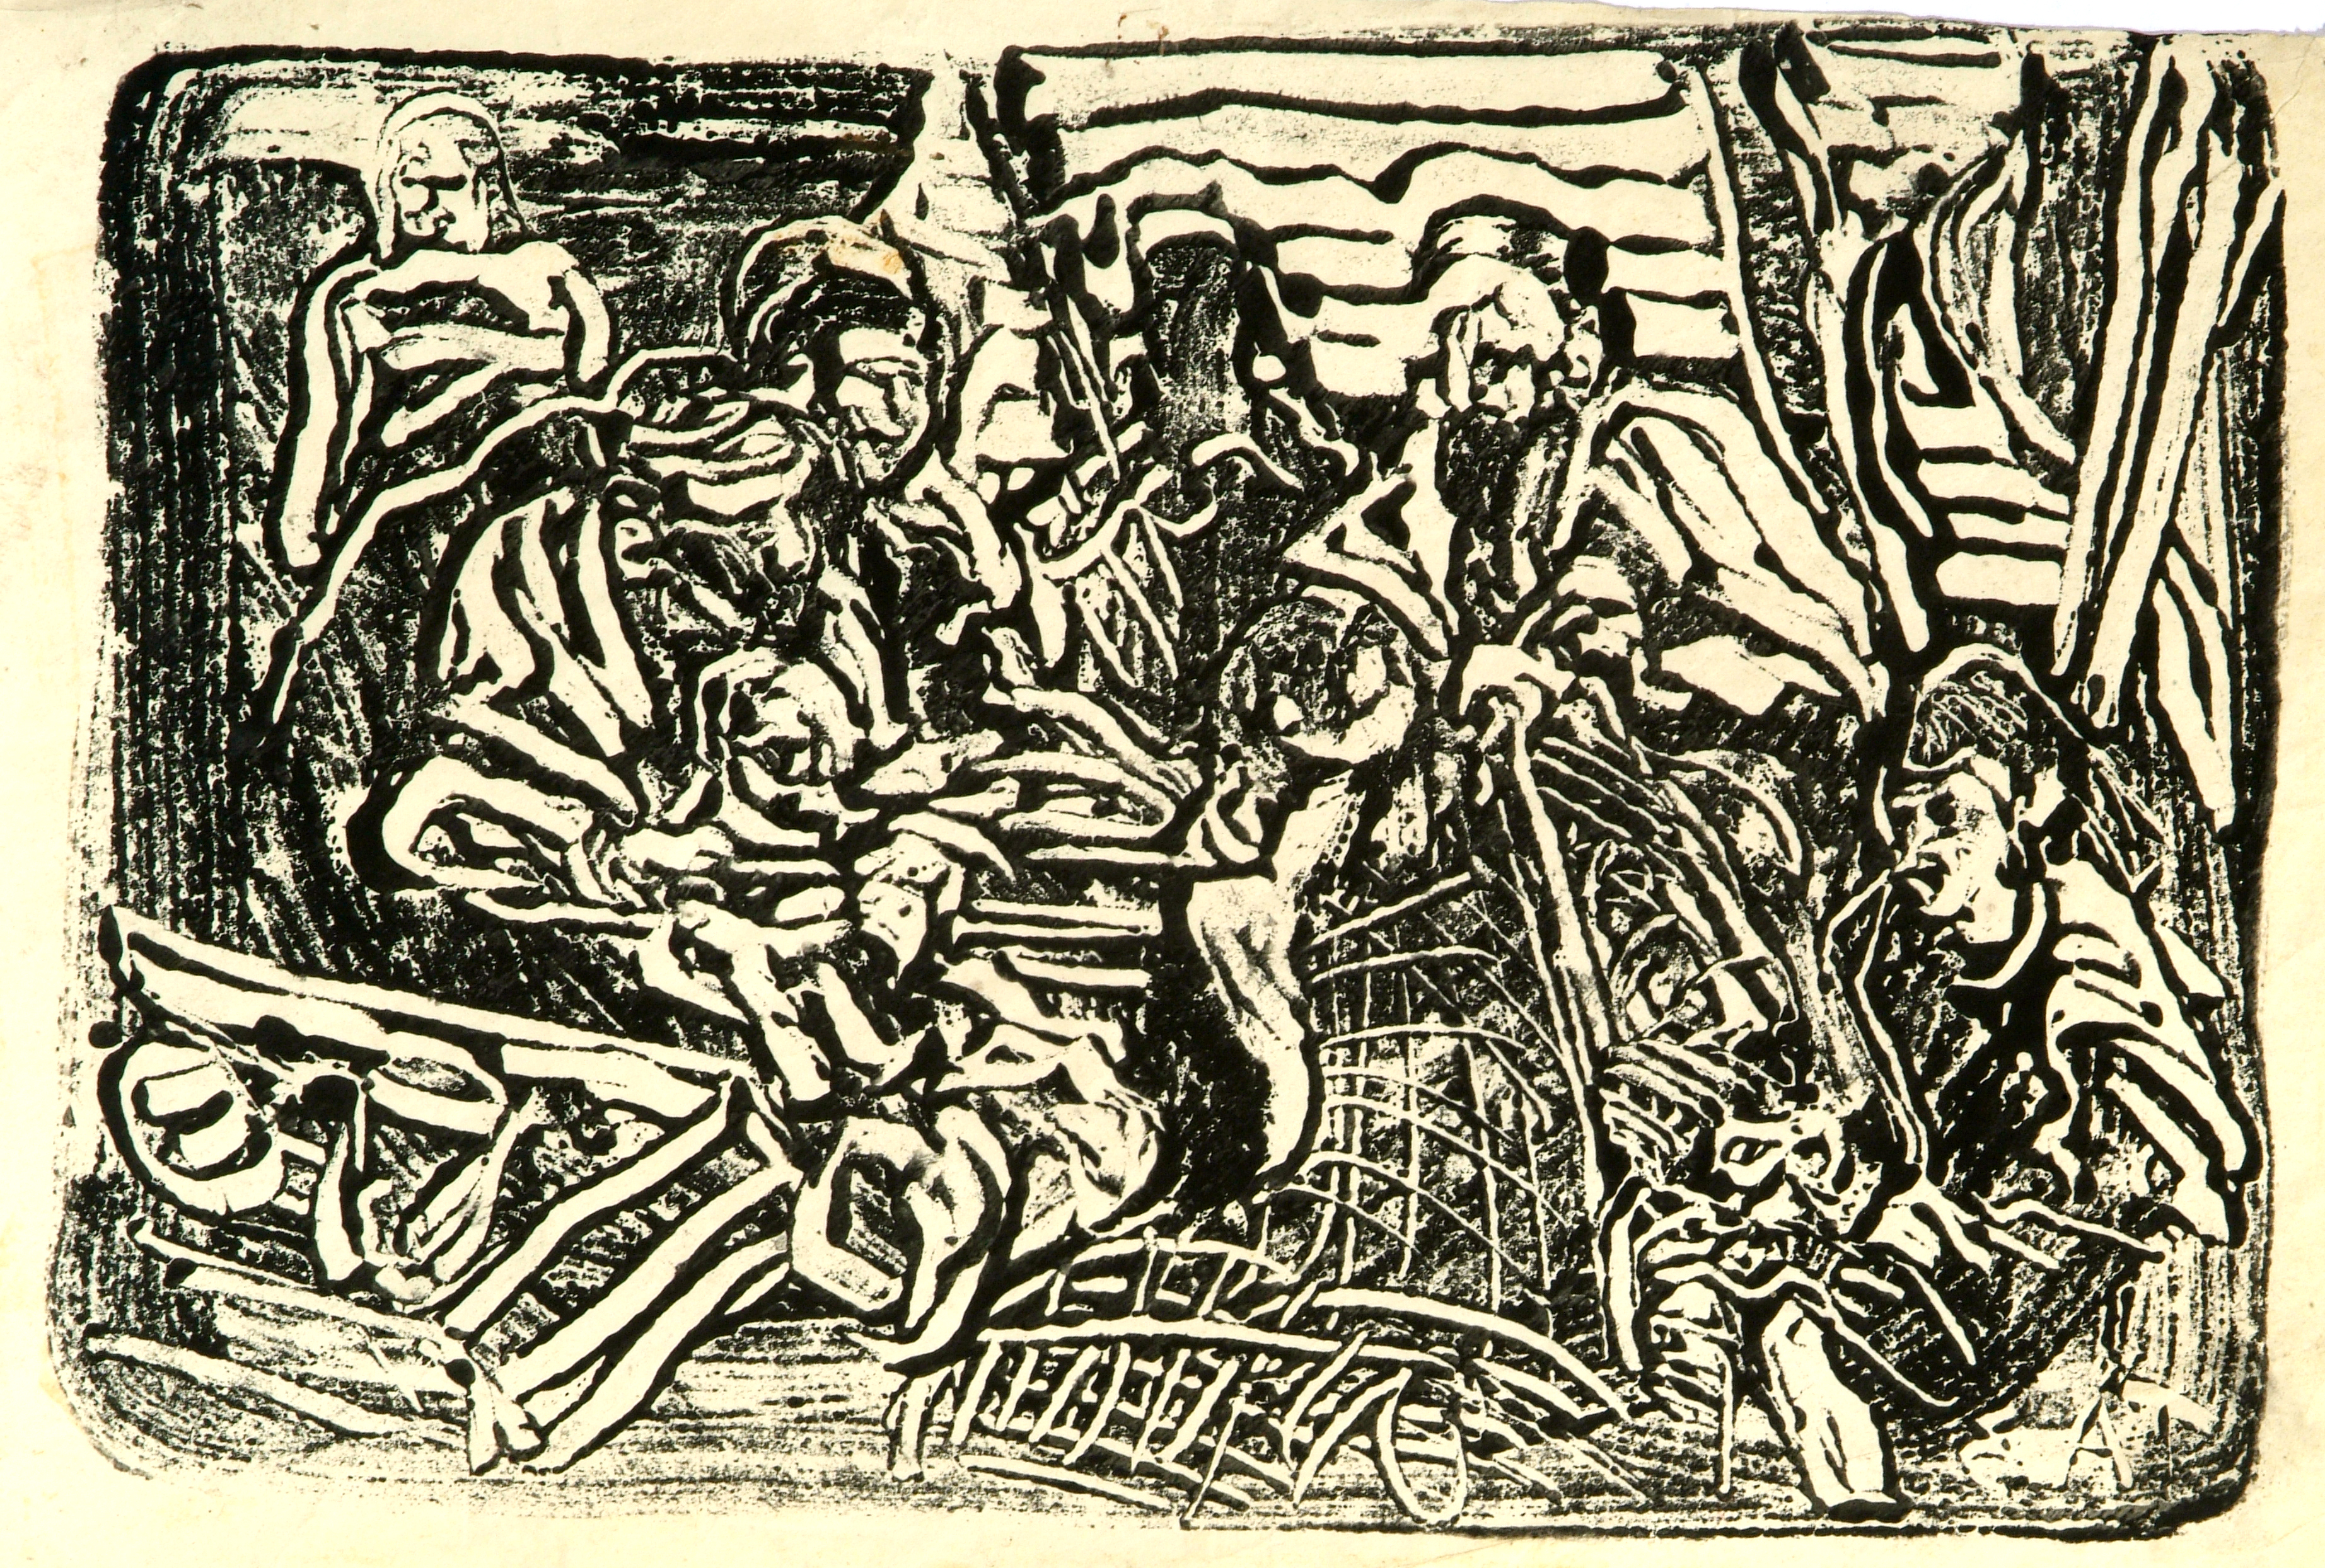 Bozzetto per il quadro di proprietà dei Paolini di Alba, Monotipo, cm 26 x 32, Anni ’80